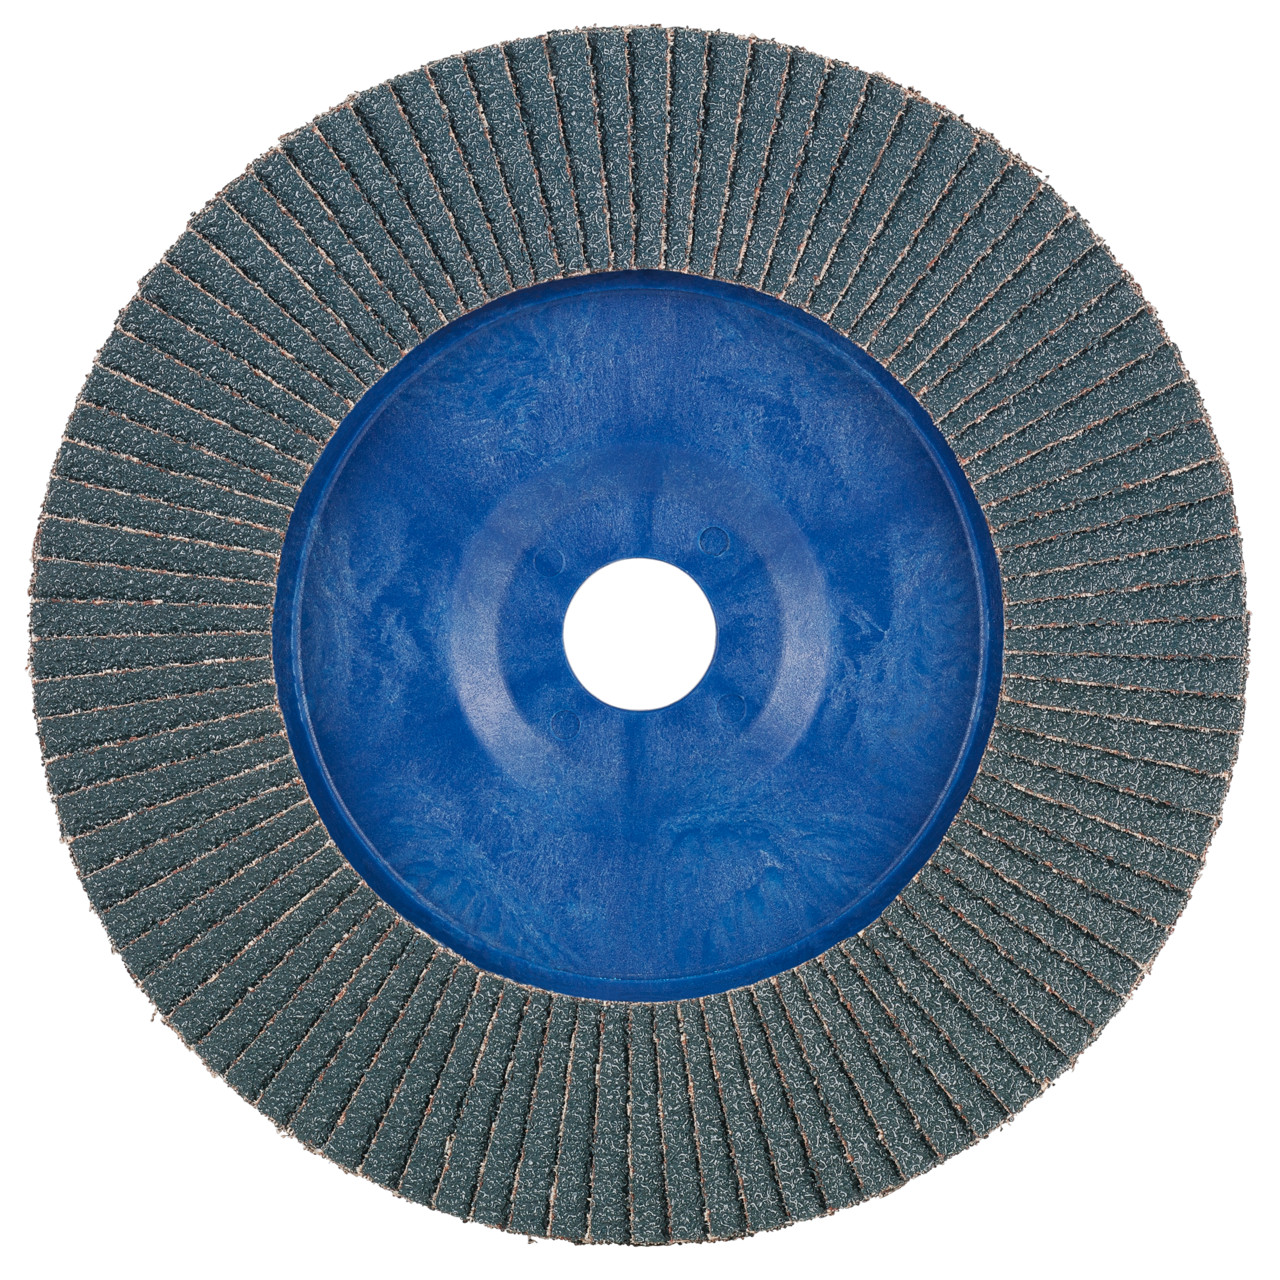 Rondella dentata Tyrolit DxH 125x22.2 2in1 per acciaio e acciaio inox, P40, forma: 28N - versione diritta (corpo portante in plastica), Art. 847921